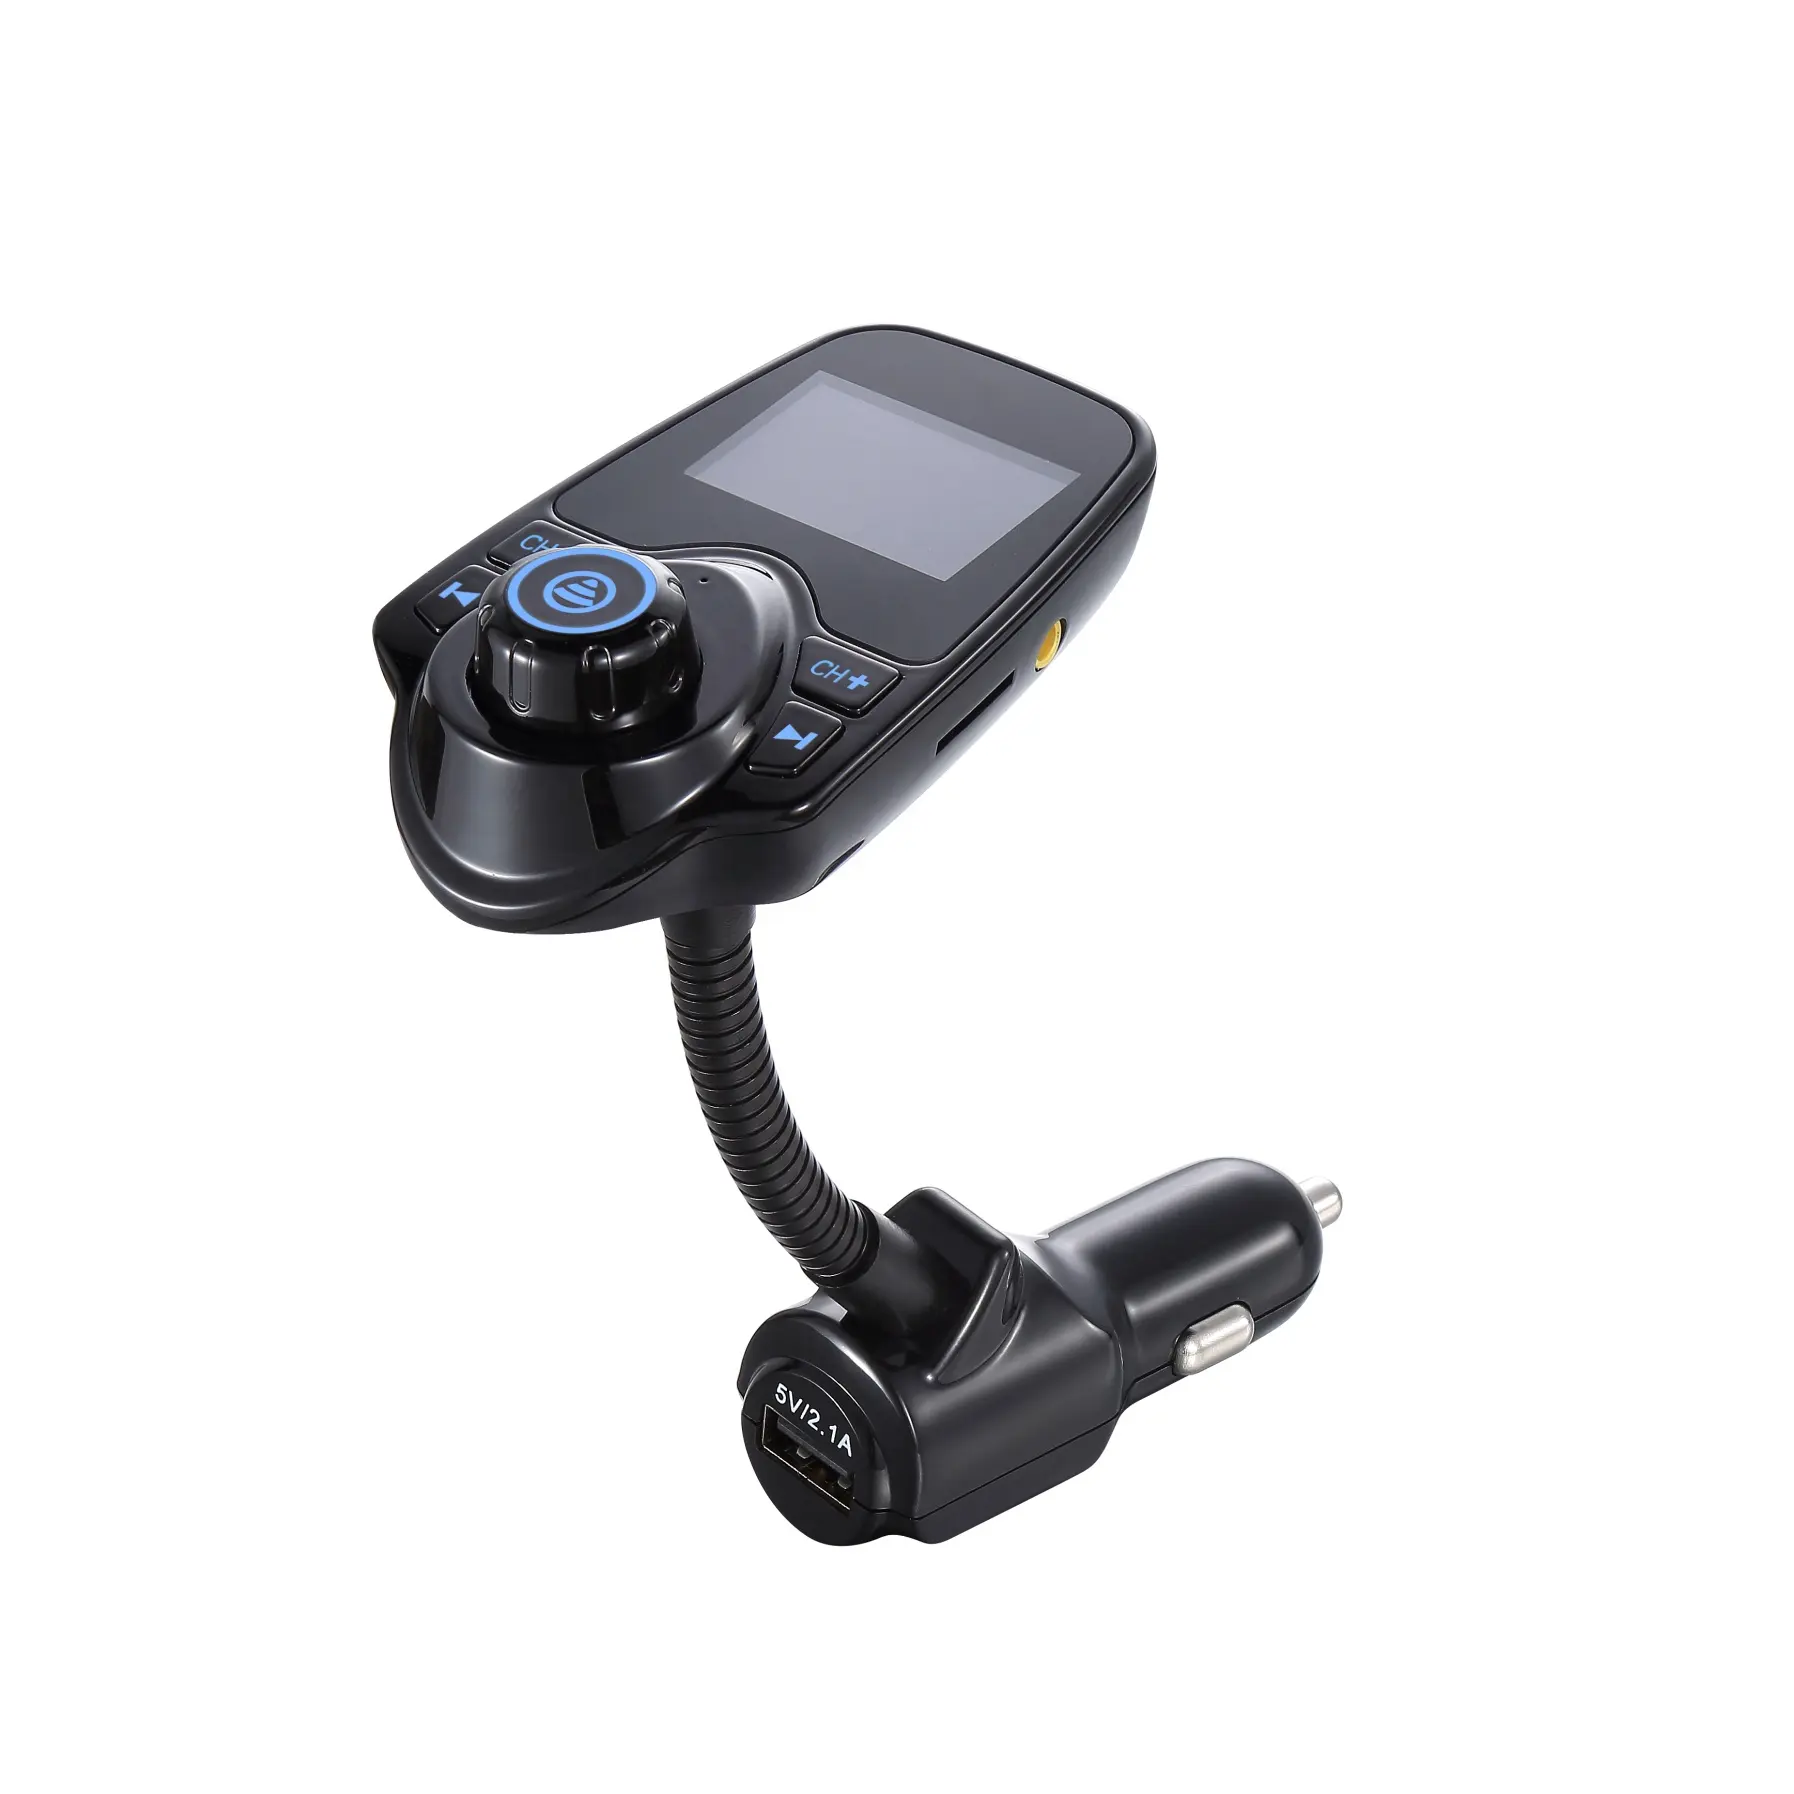 AGETUNR T10 Bluetooth V5.0 MP3 плеер дисплей напряжения автомобиля AUX слот для карт памяти DC 5V2.1A зарядки FM передатчик с сенсорным экраном